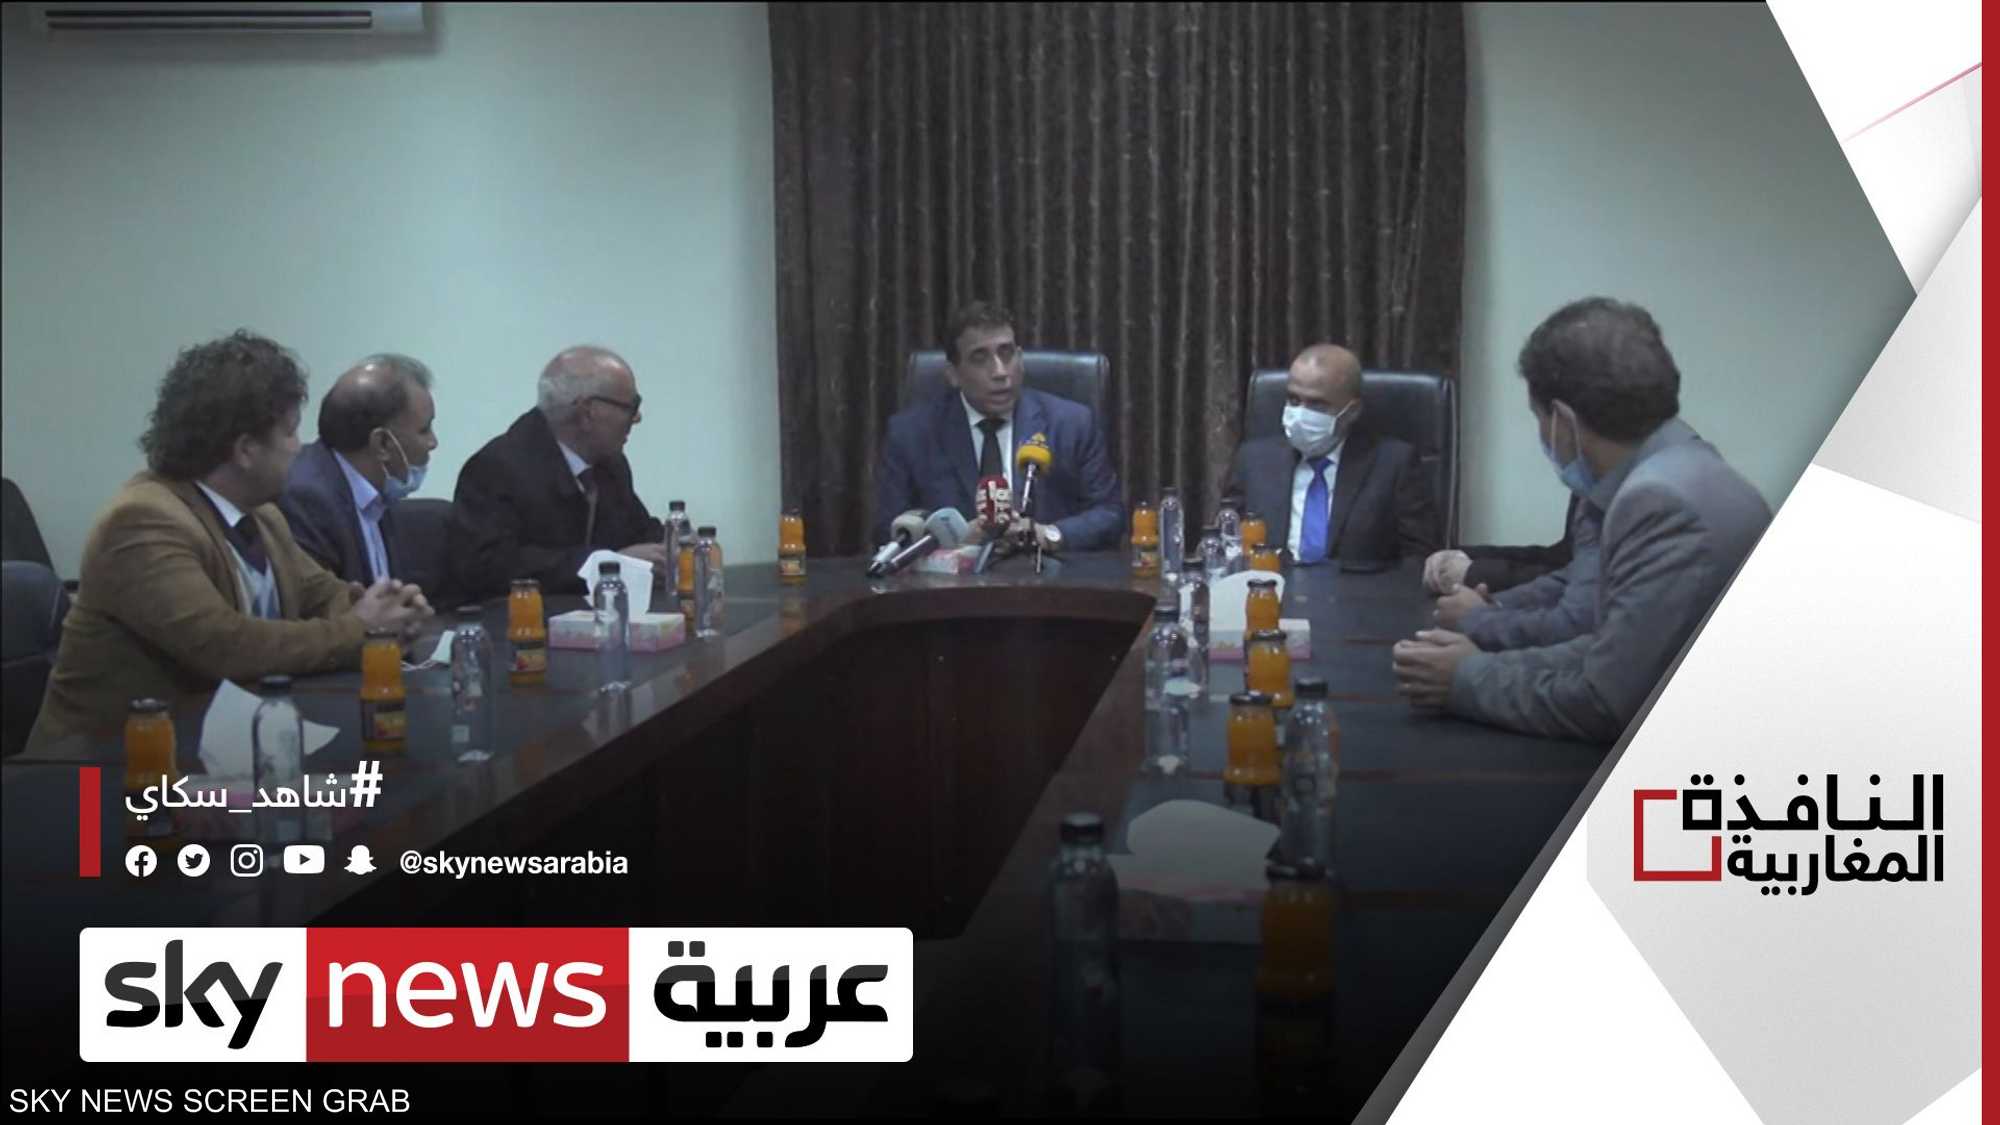 المجلس الرئاسي الليبي يطرح خطة جديدة للحل